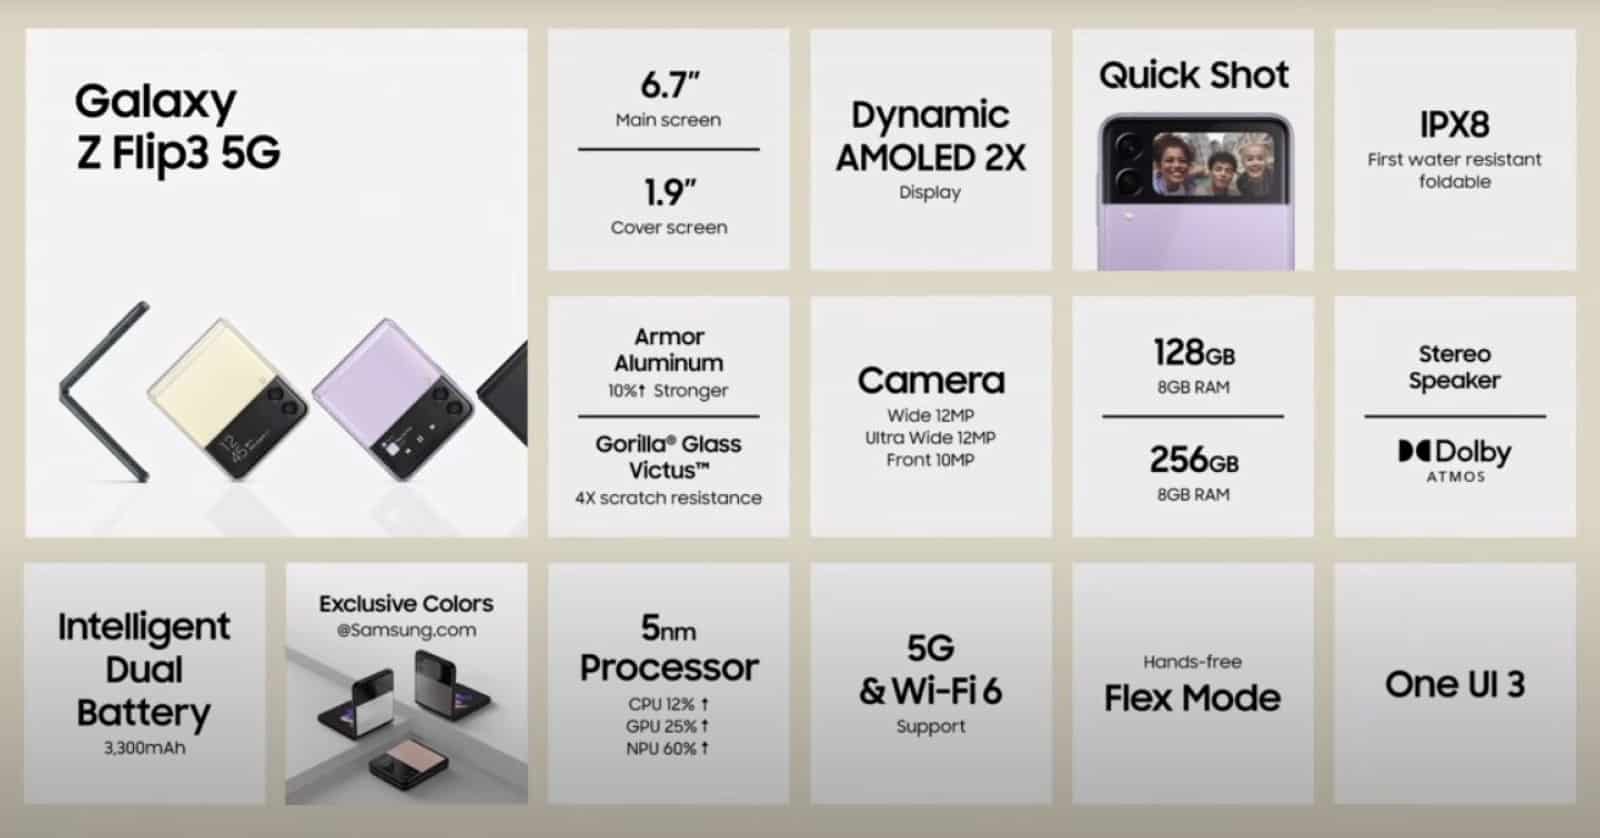 Samsung Unpacked-dia met de specificaties en functies van de Galaxy Z Flip 3